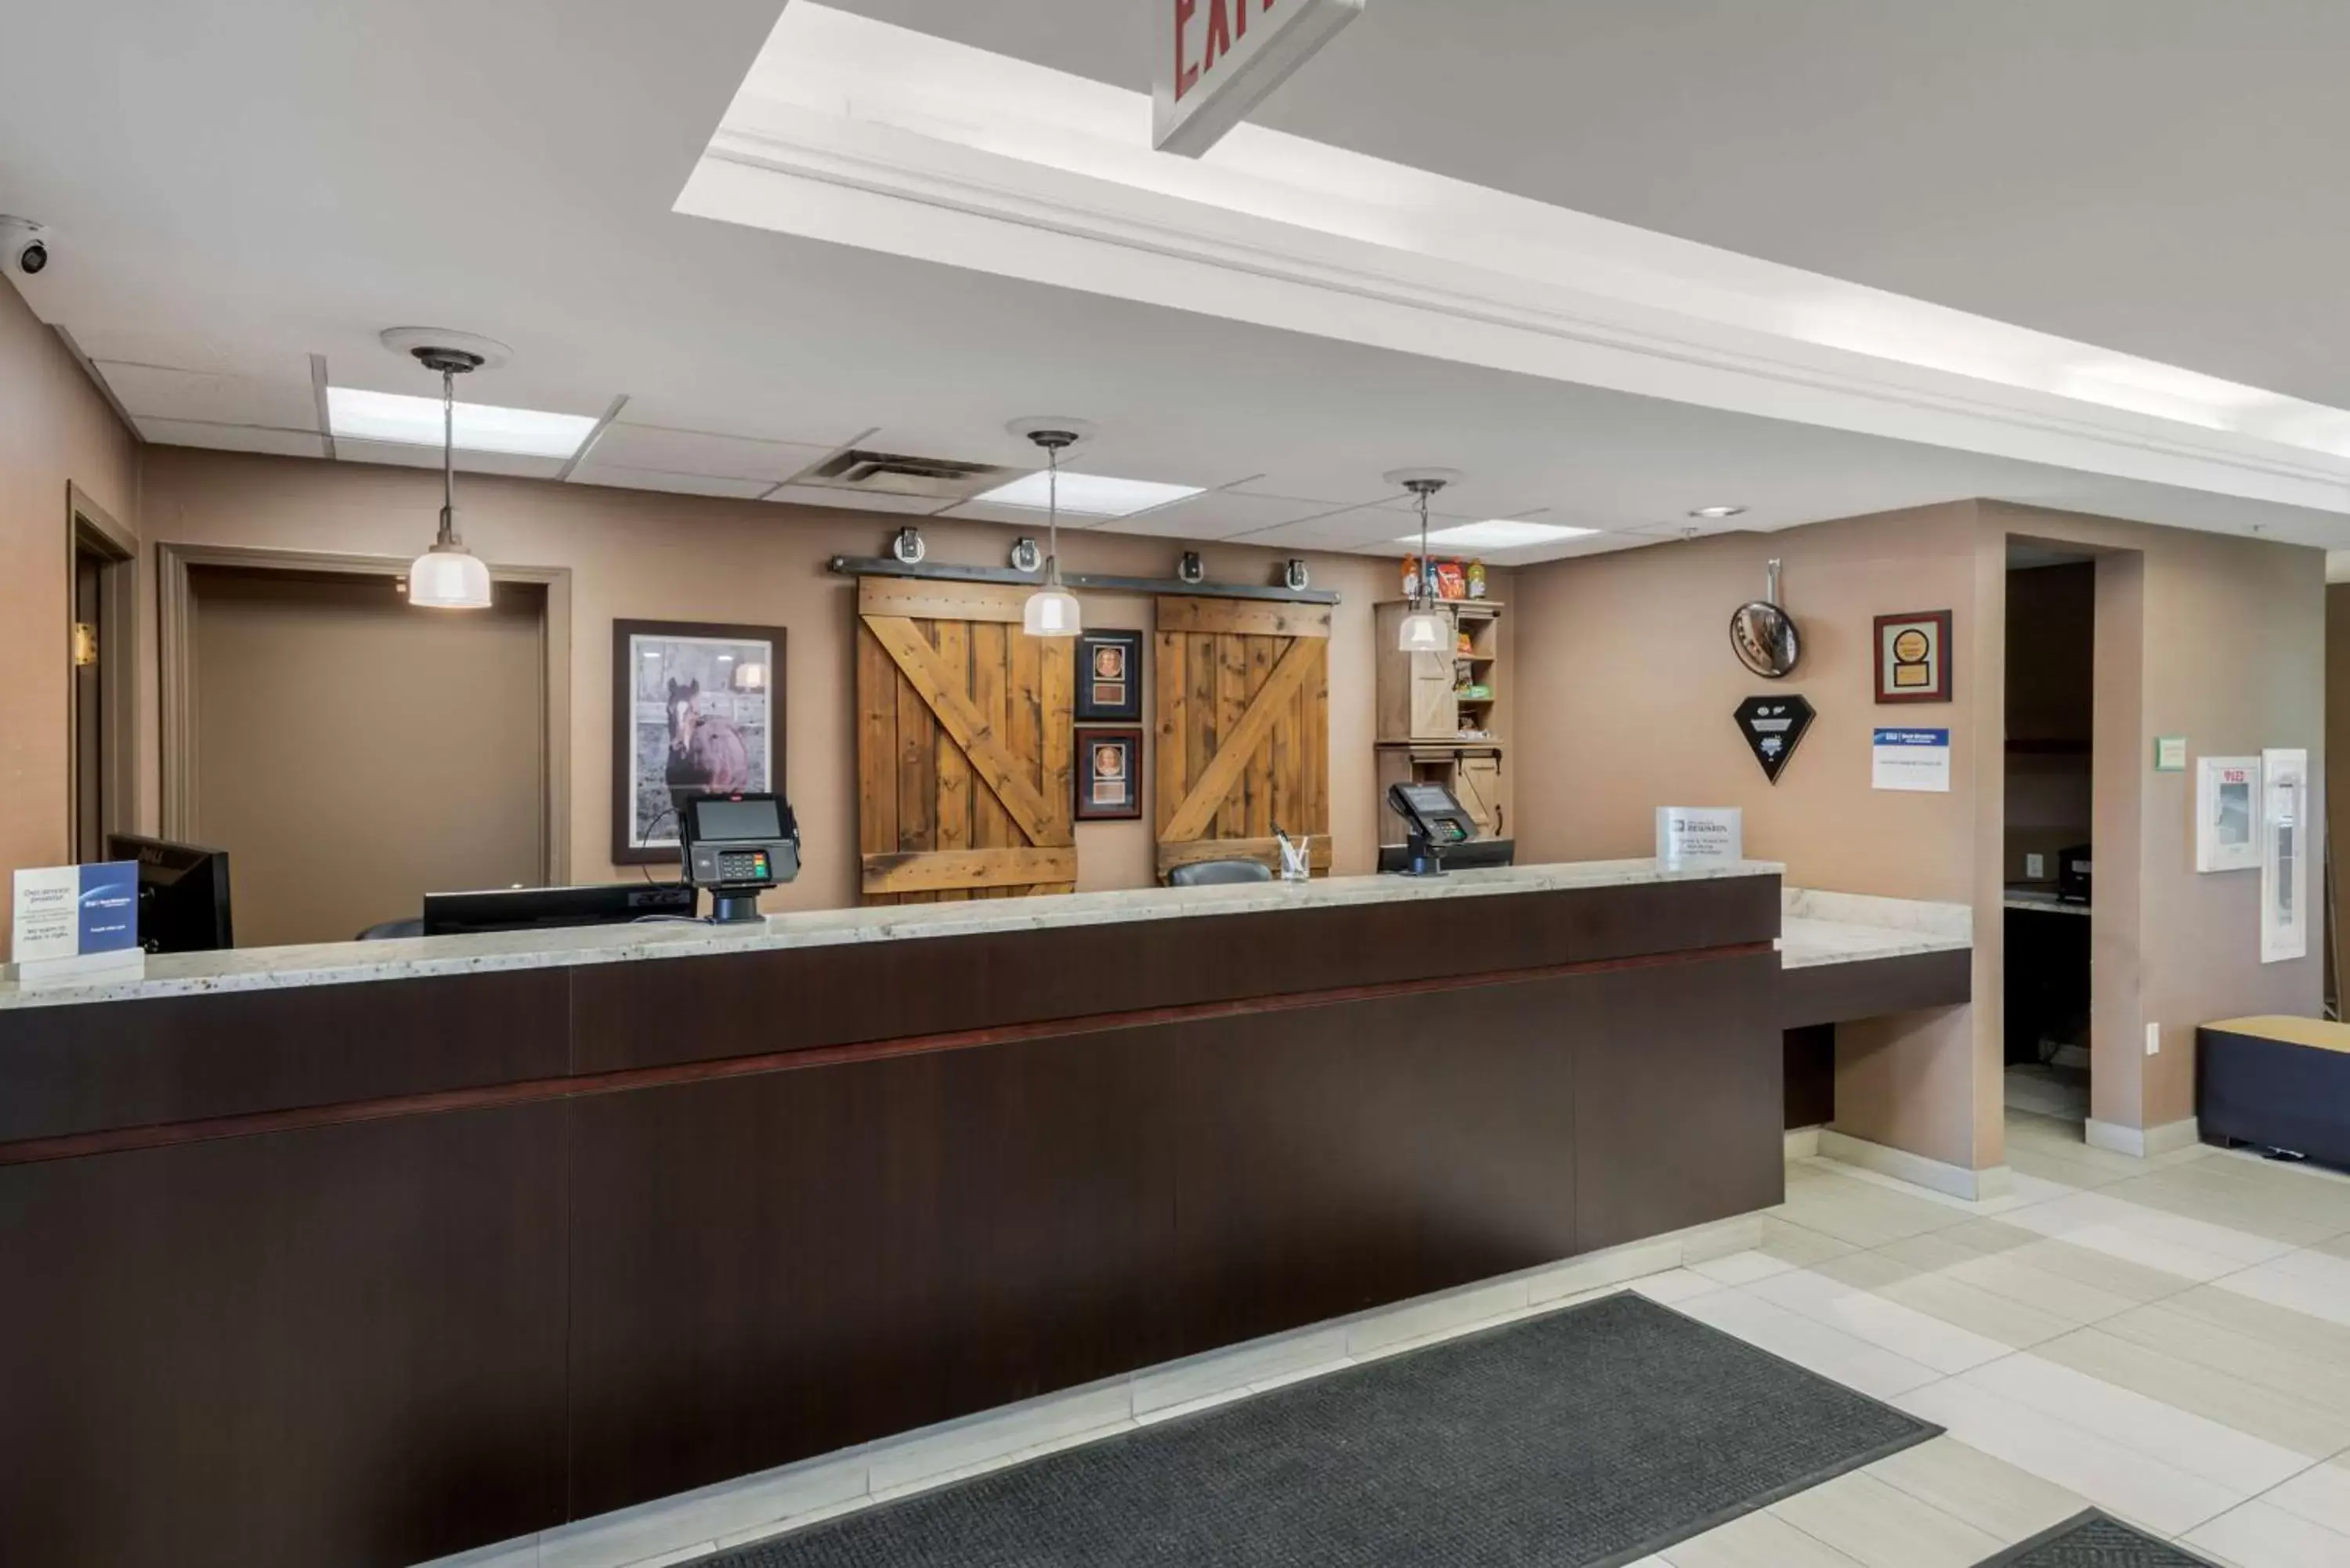 Lobby or reception, Lobby/Reception in Best Western Plus Red Deer Inn & Suite